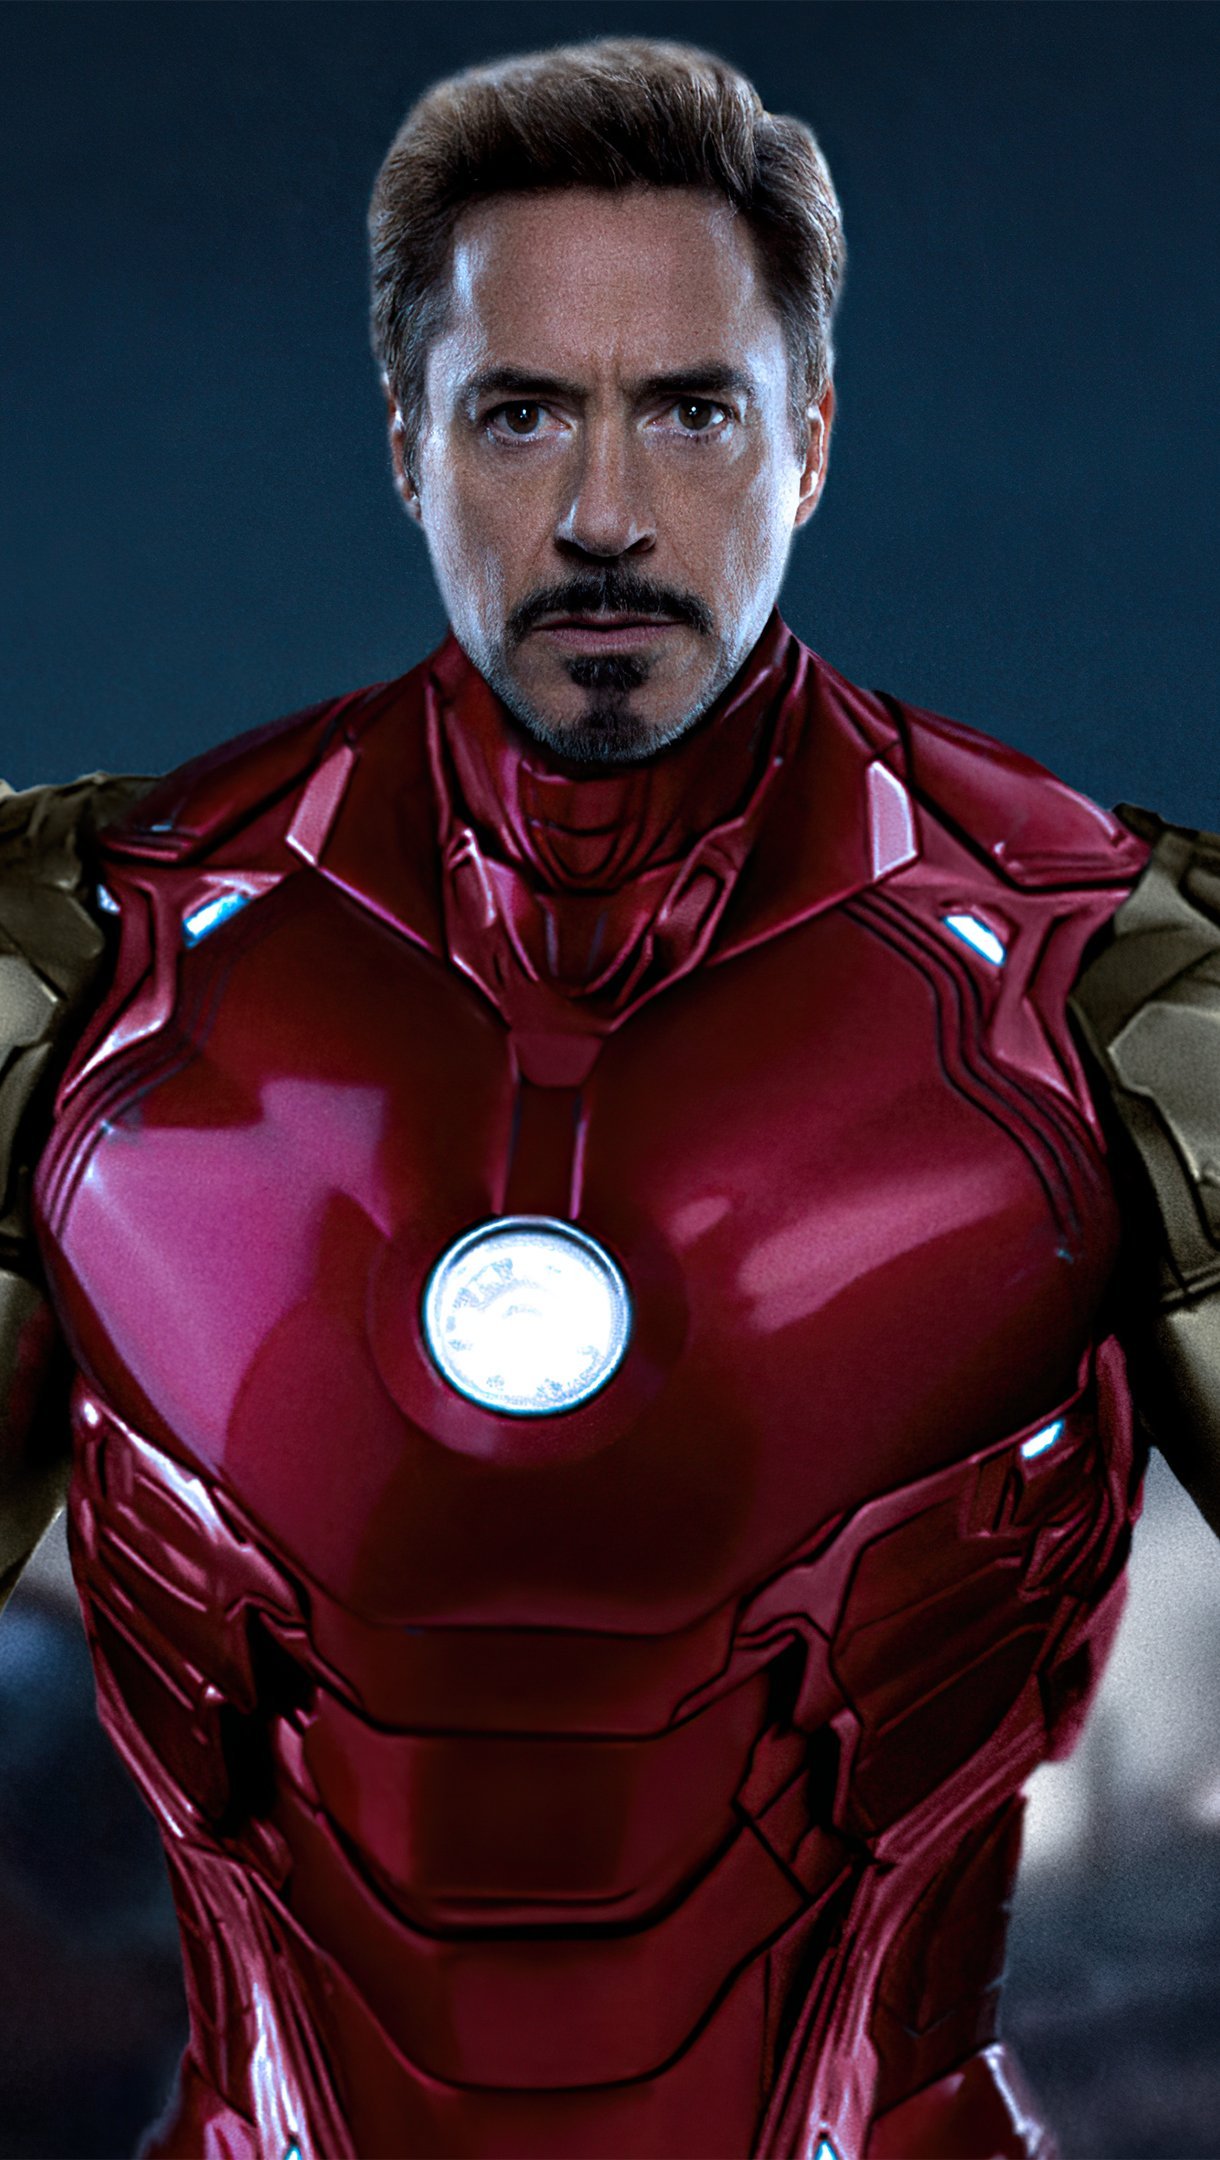 Tony Stark as Iron Man Wallpaper 4k Ultra HD ID:9224